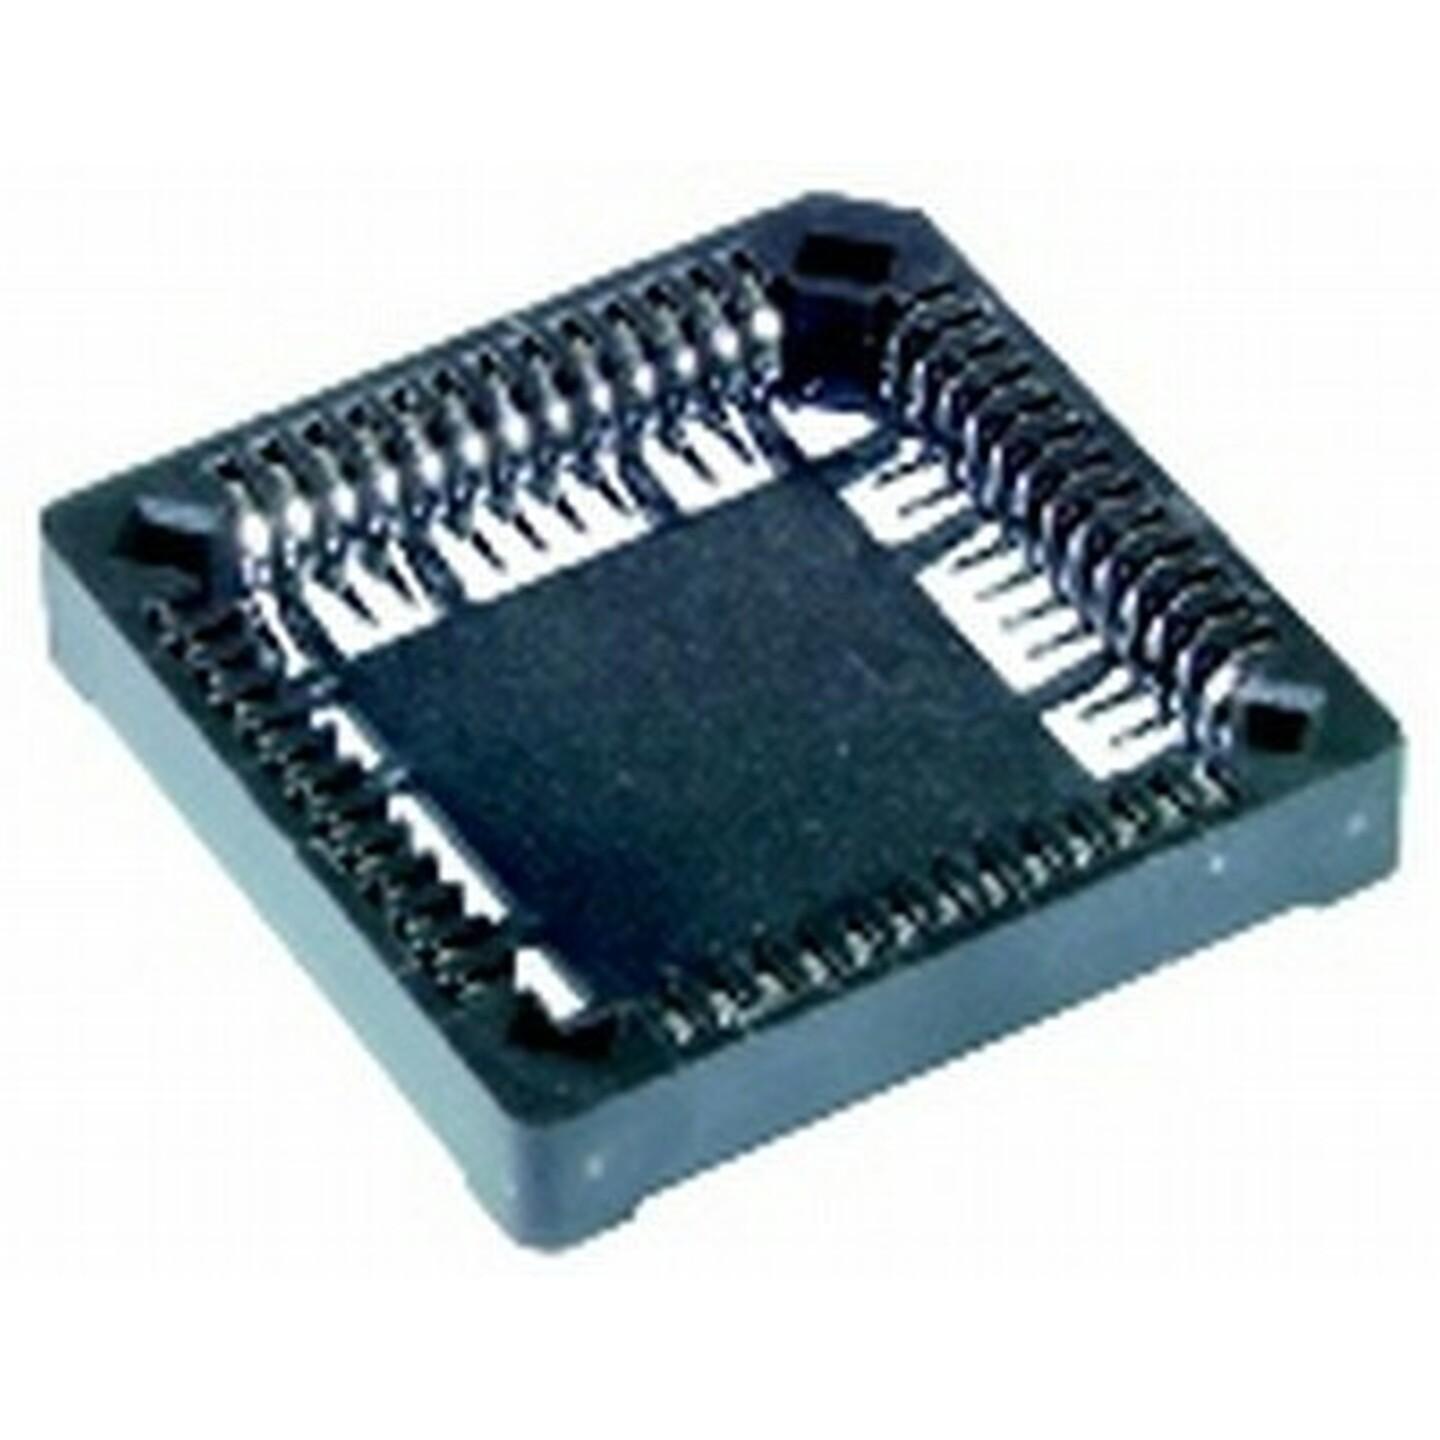 68 Pin Surface Mount PLCC Socket